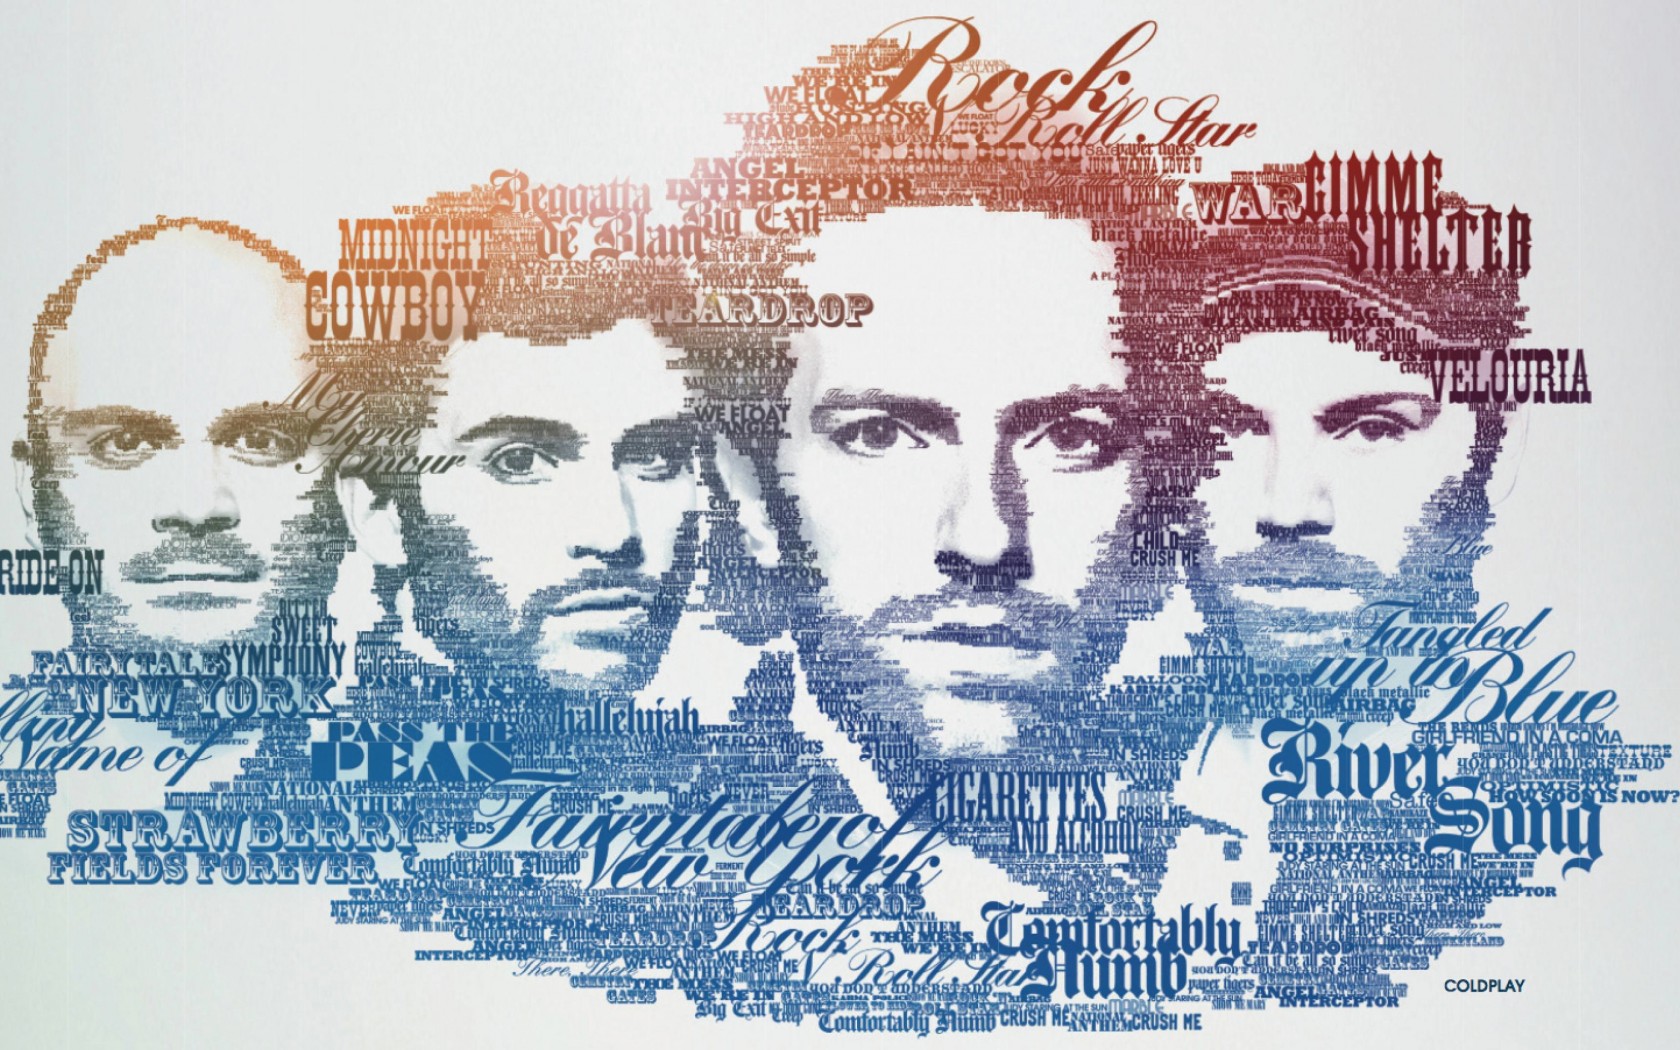 Coldplay Typographic Portrait Wallpaper for Desktop 1680x1050